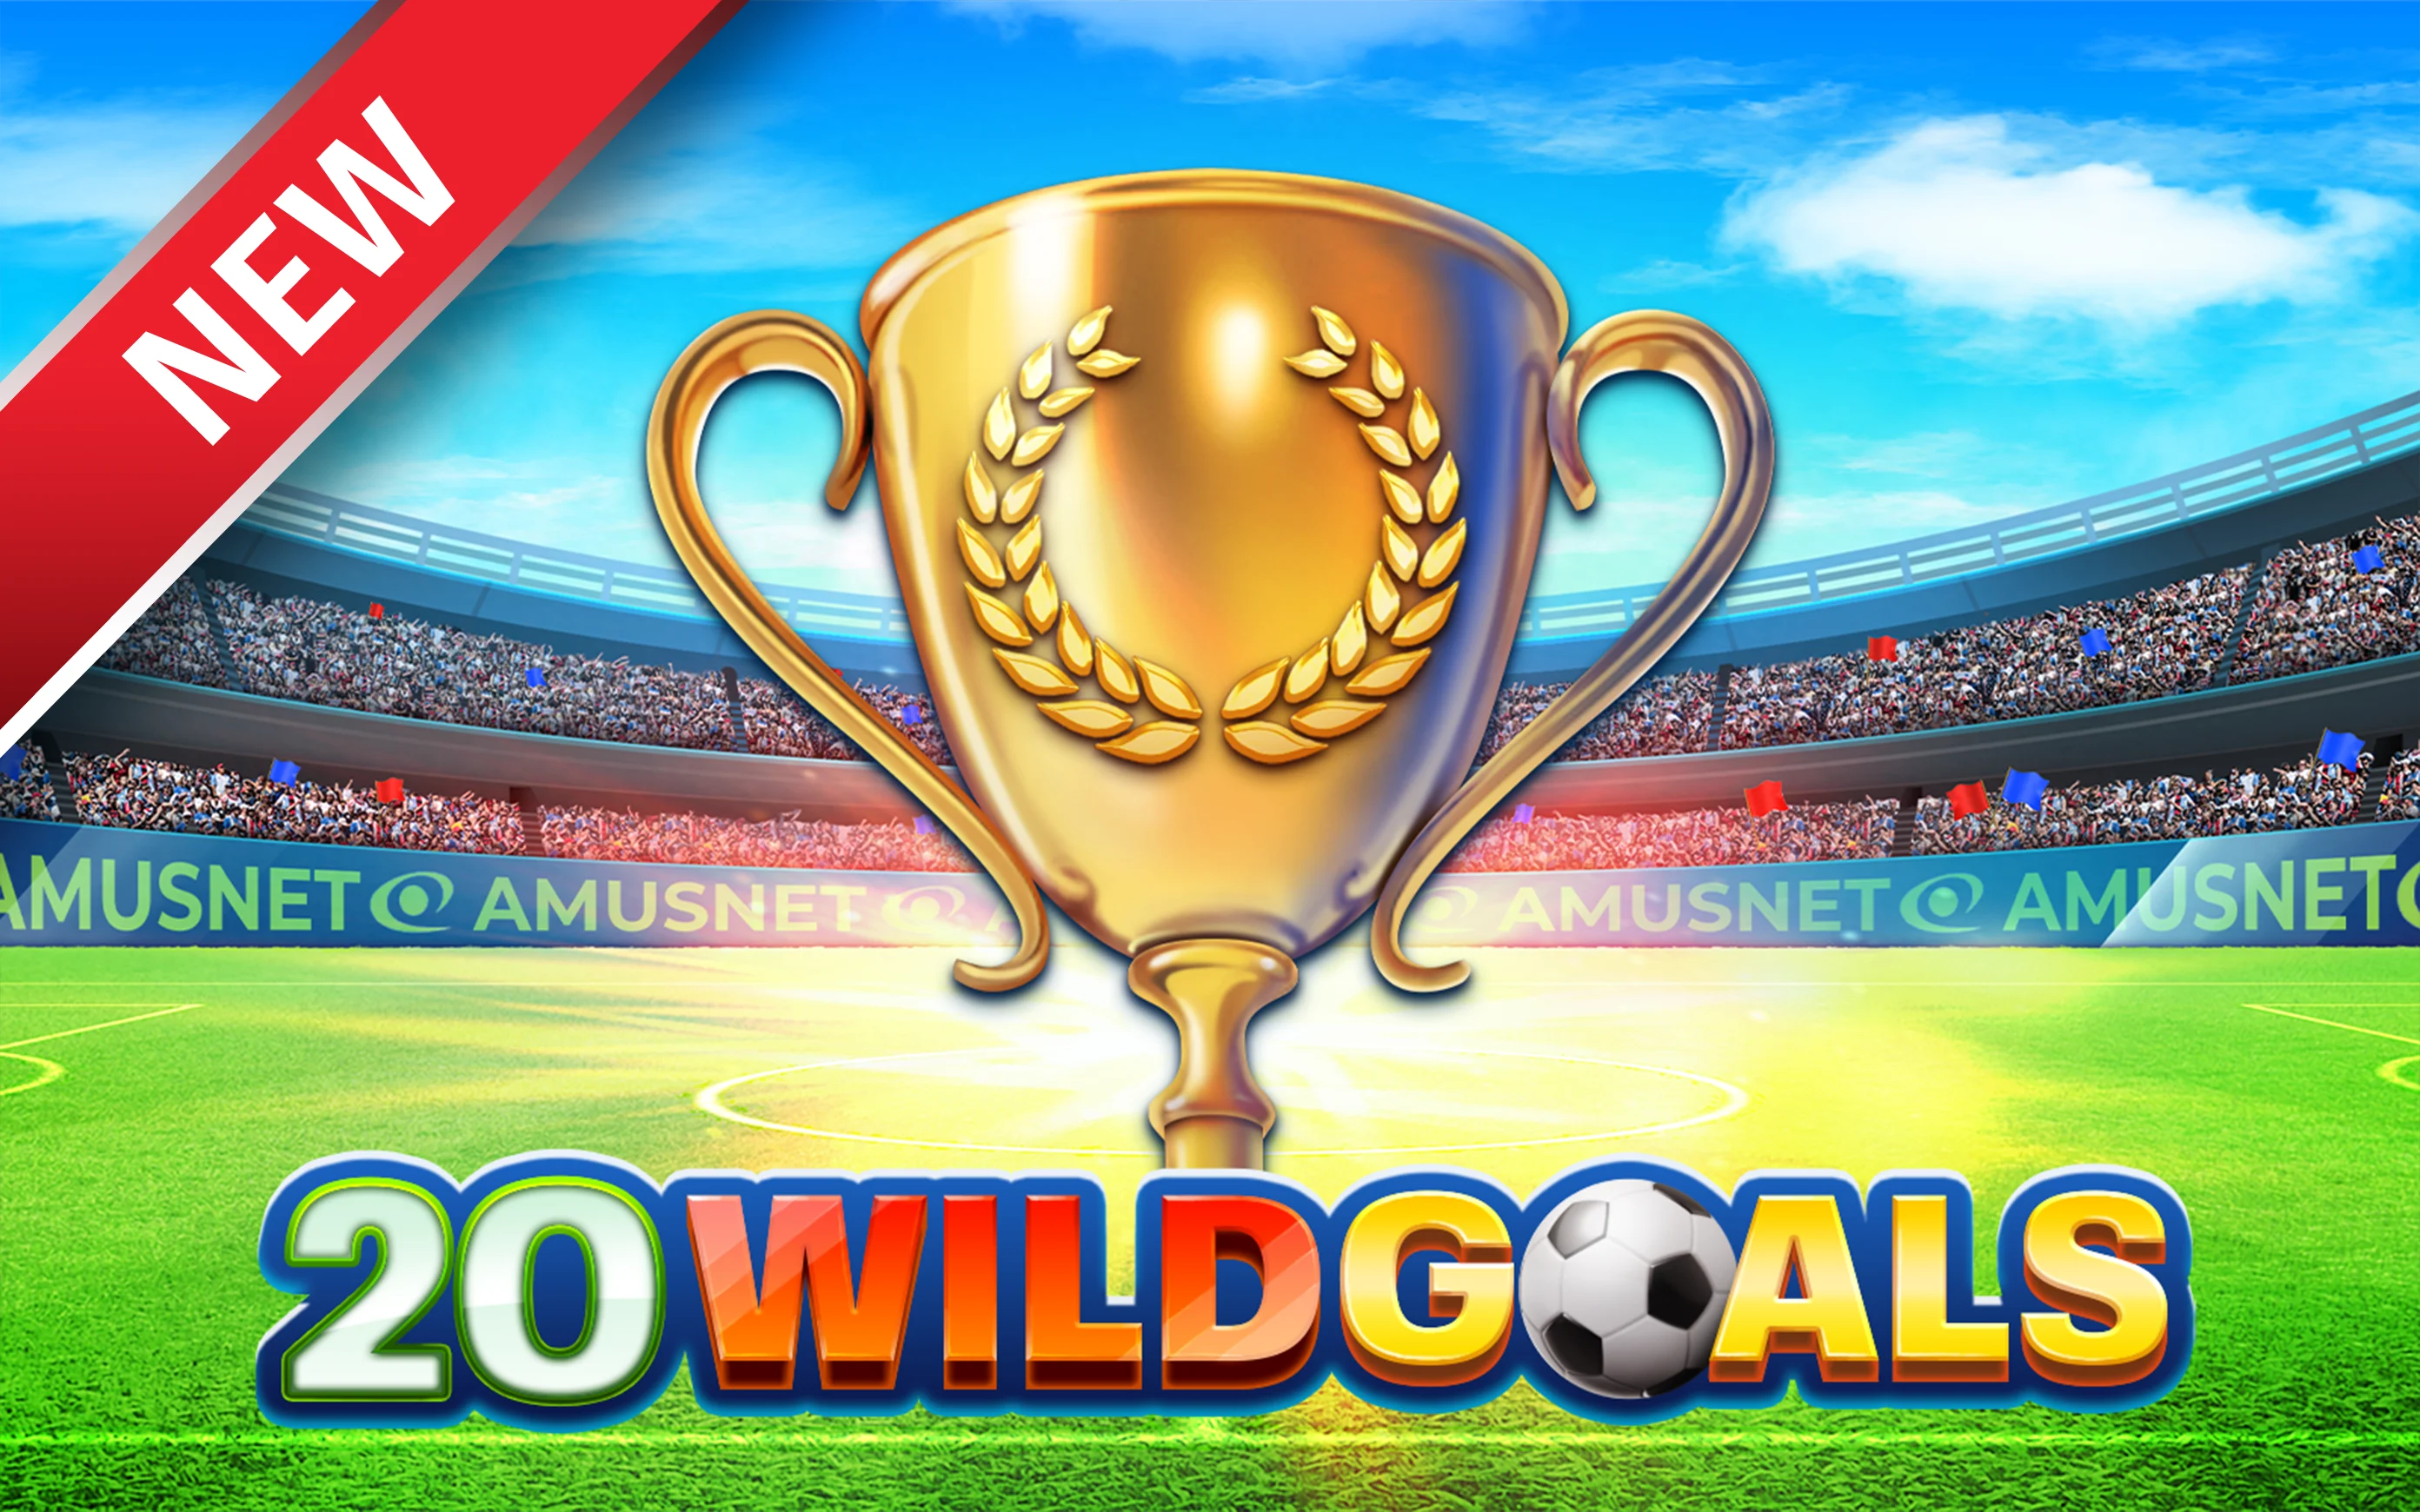 Play 20 Wild Goals on Starcasino.be online casino